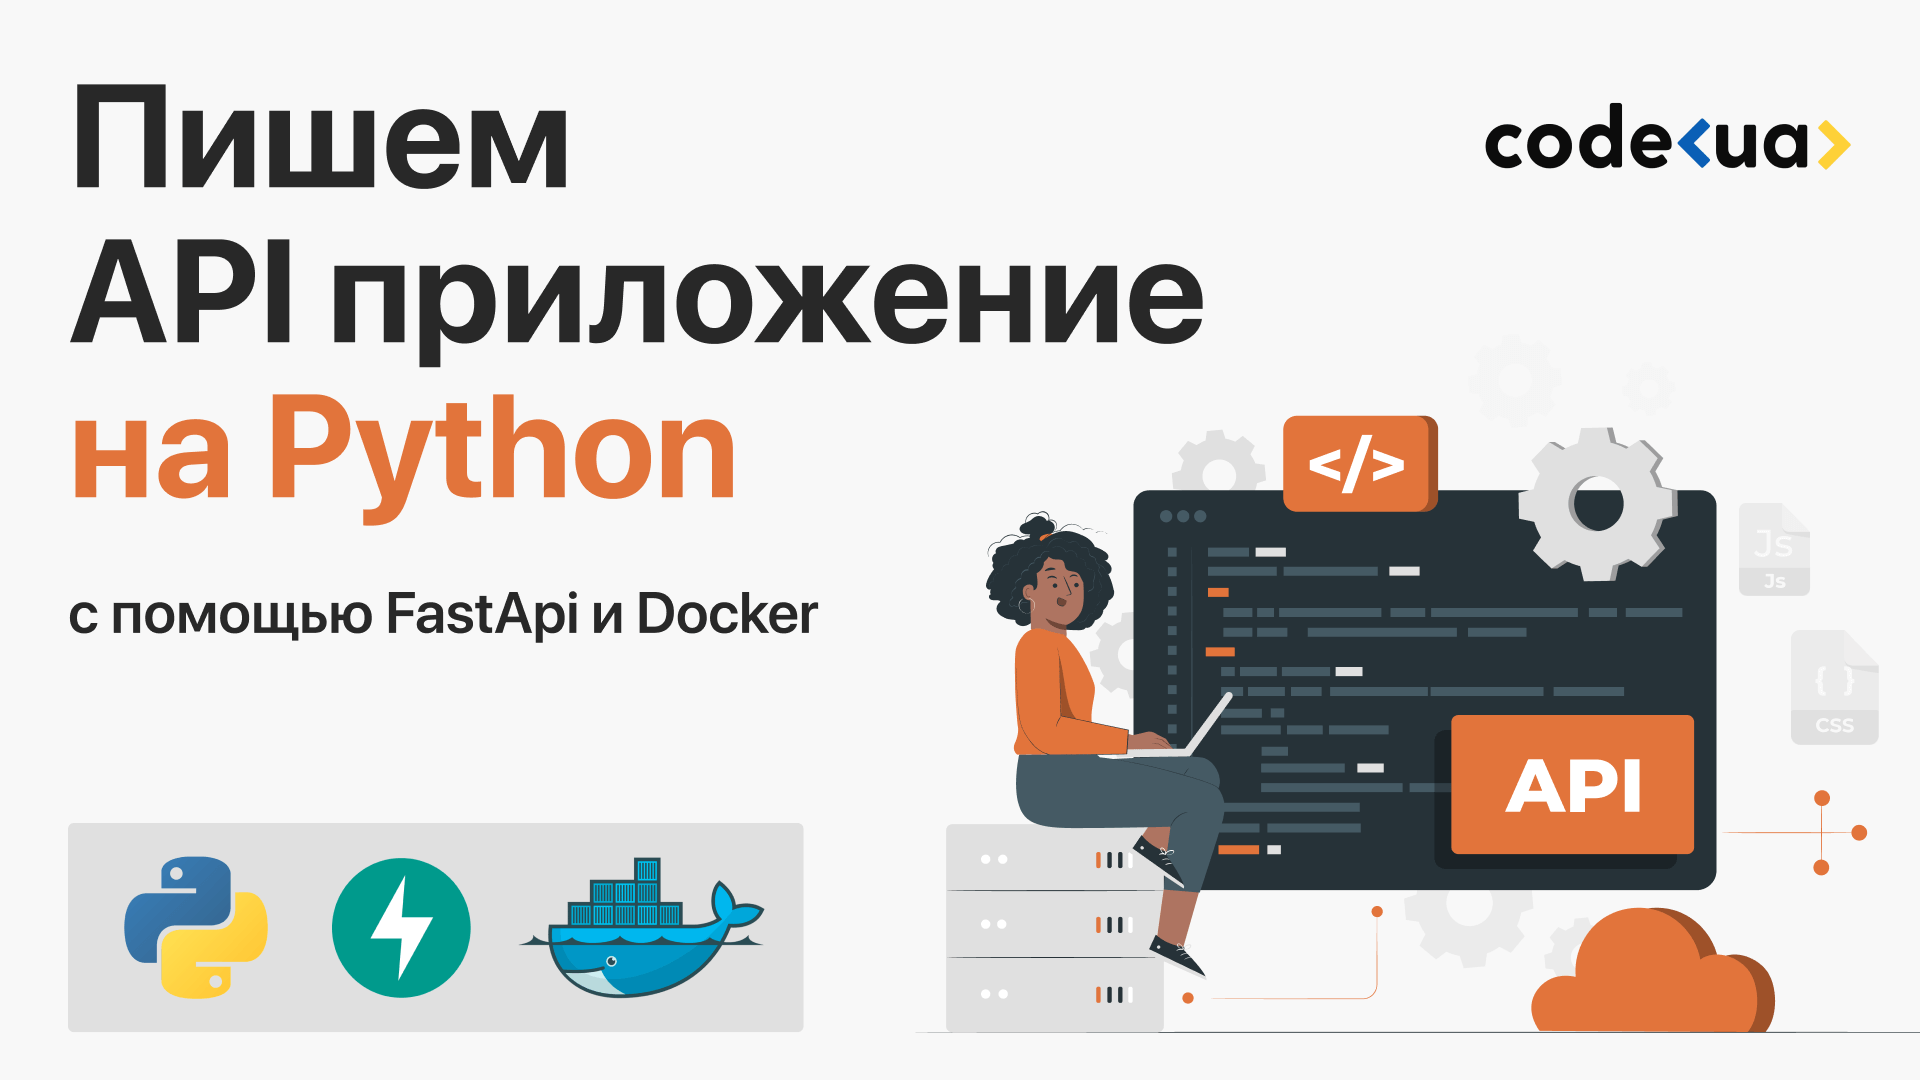 Пишем API приложение на Python при помощи FastAPI и Docker.